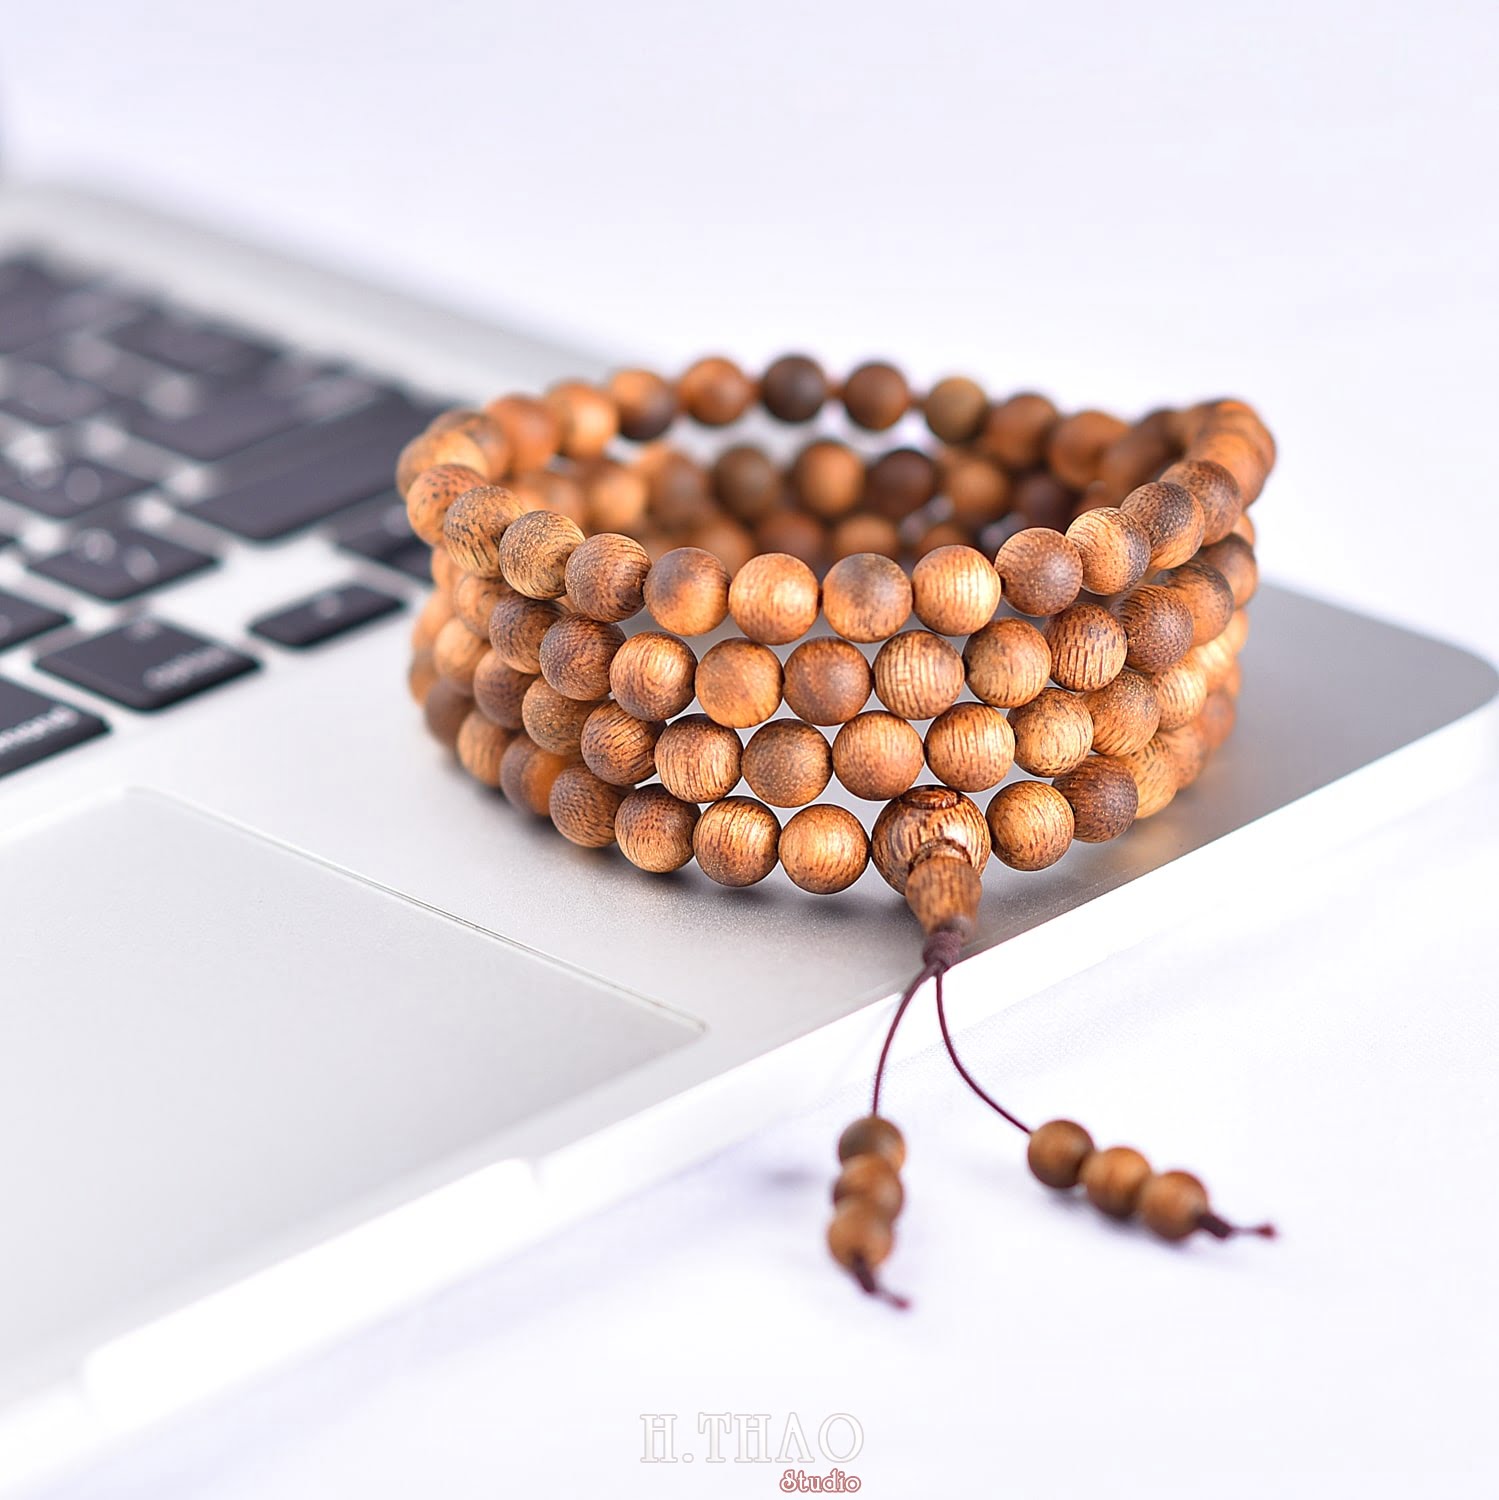 Anh trang hat 1 - Bộ ảnh sản phẩm vòng tràng hạt đeo tay đẹp - HThao Studio